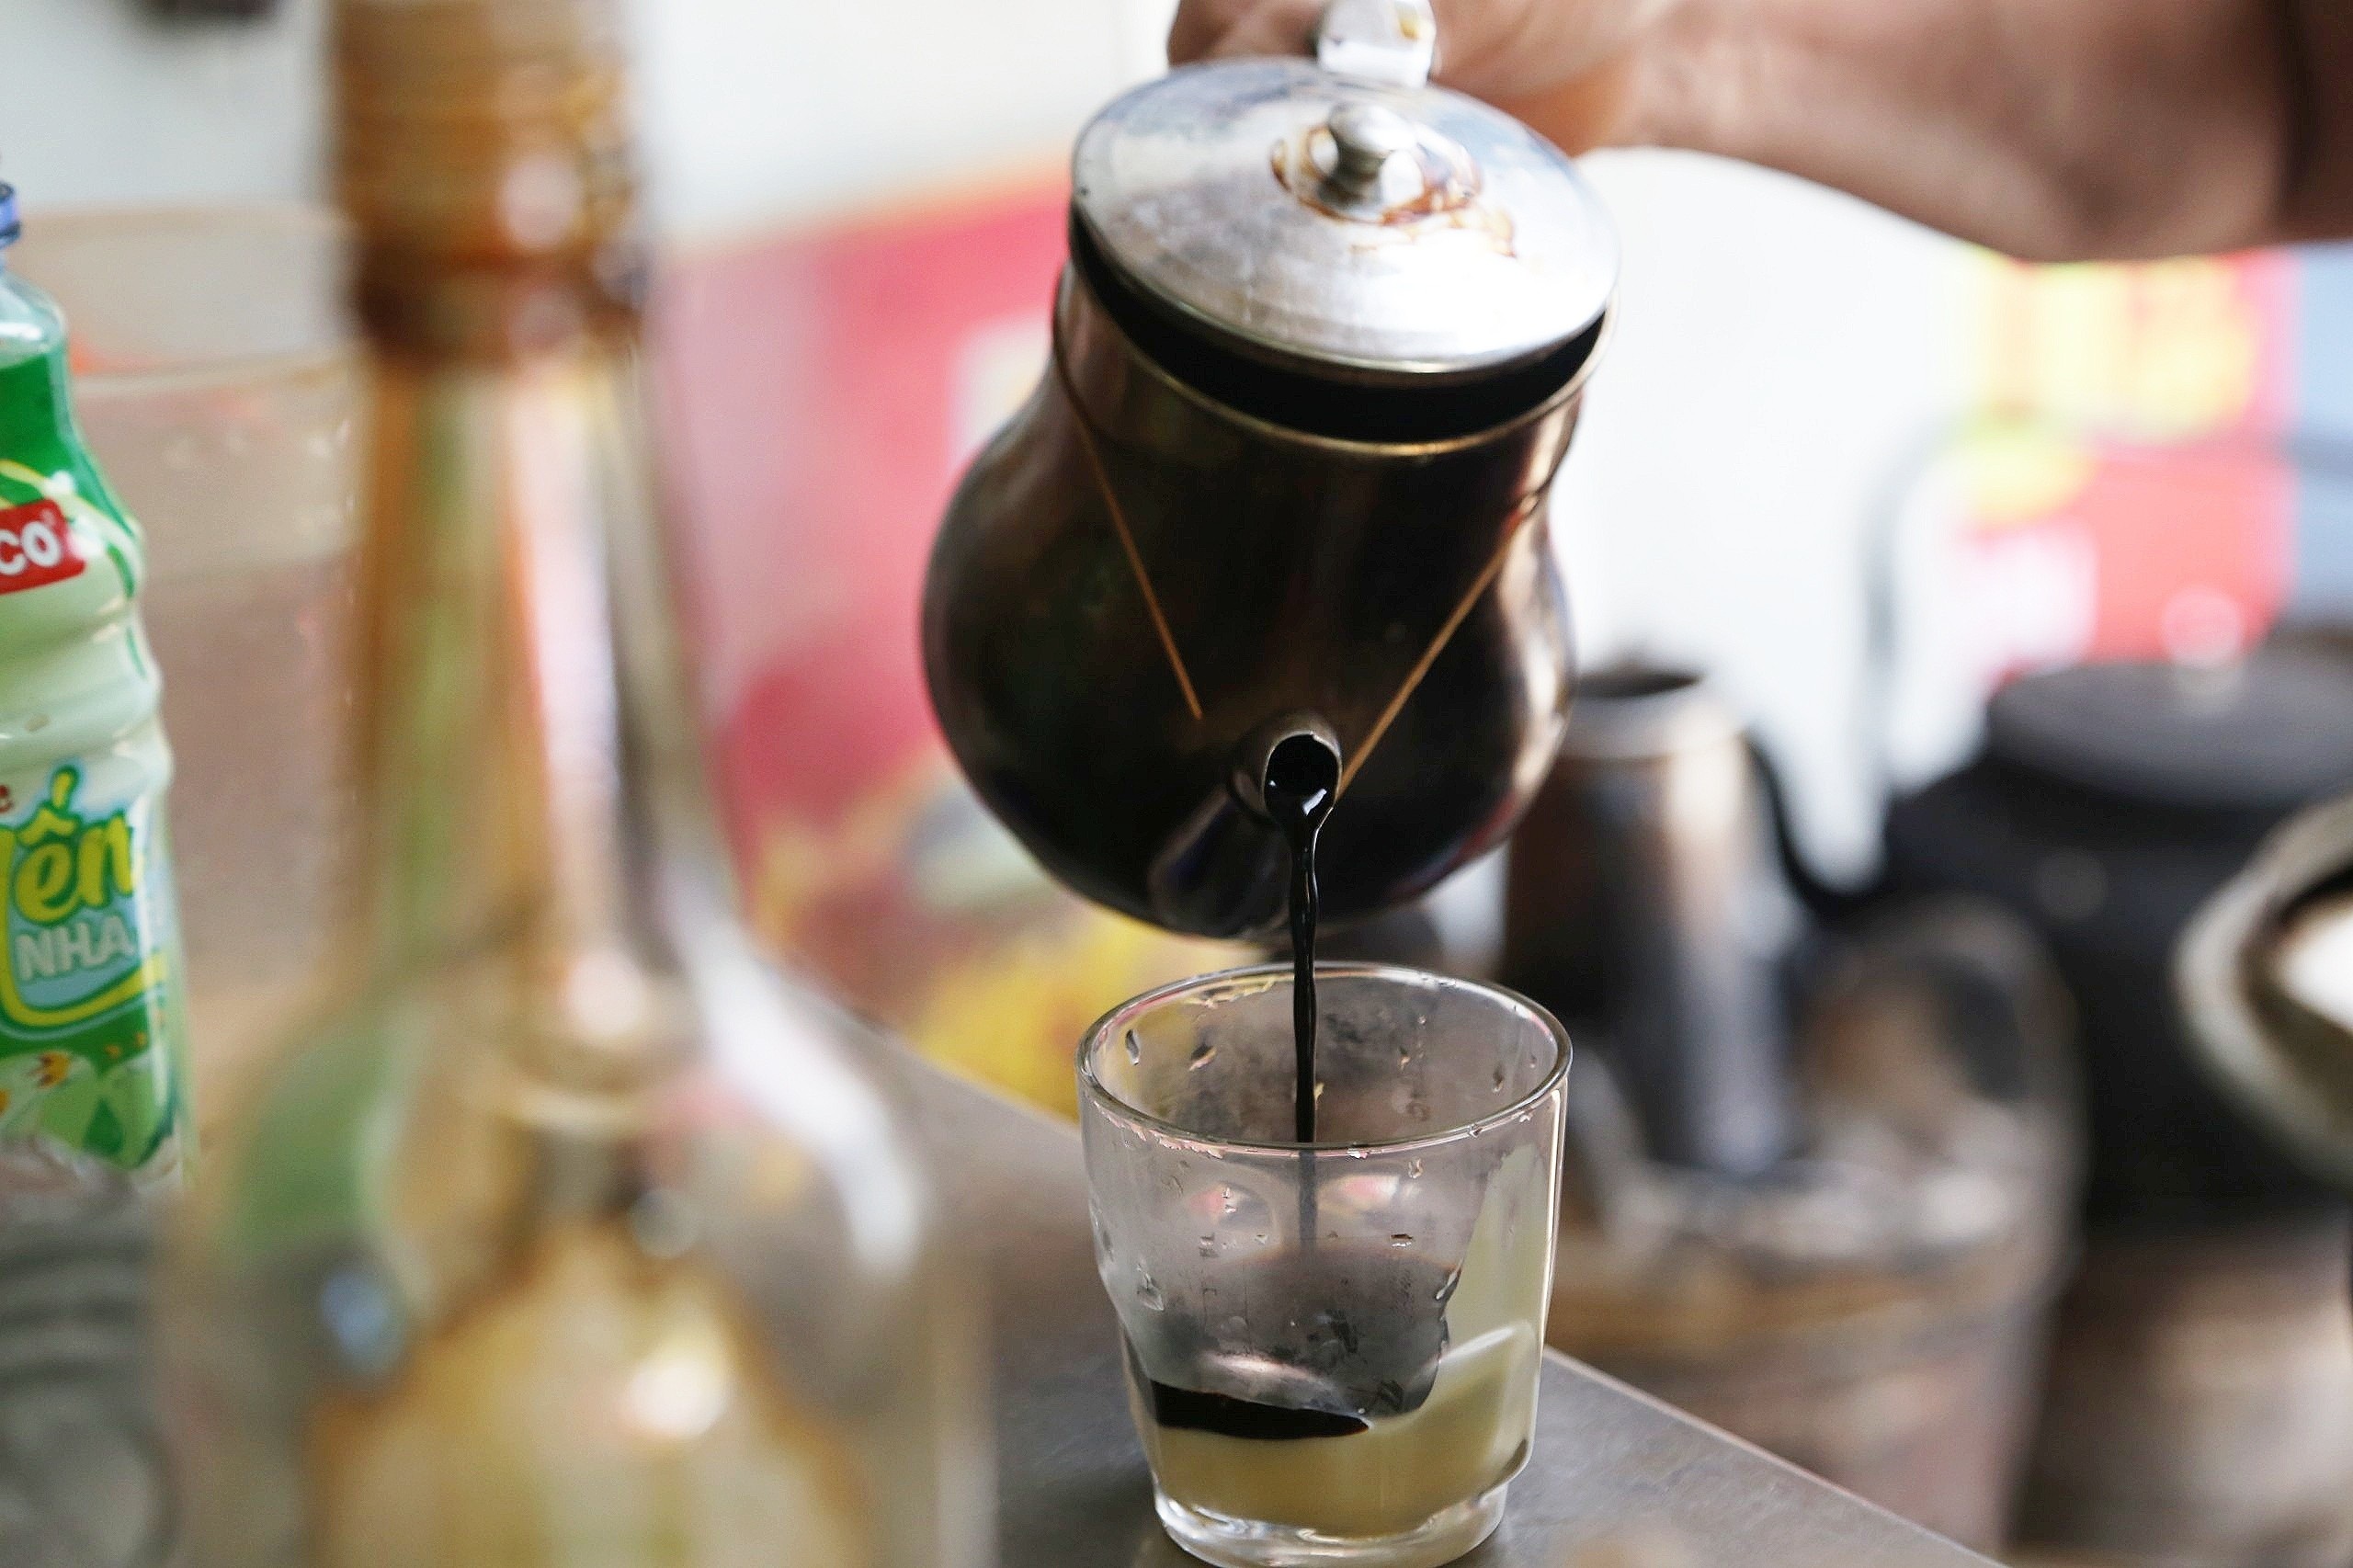 Quán cà phê vợt Đà Nẵng ngày bán 300 cốc, hút khách bởi chiêu pha chế độc - 4